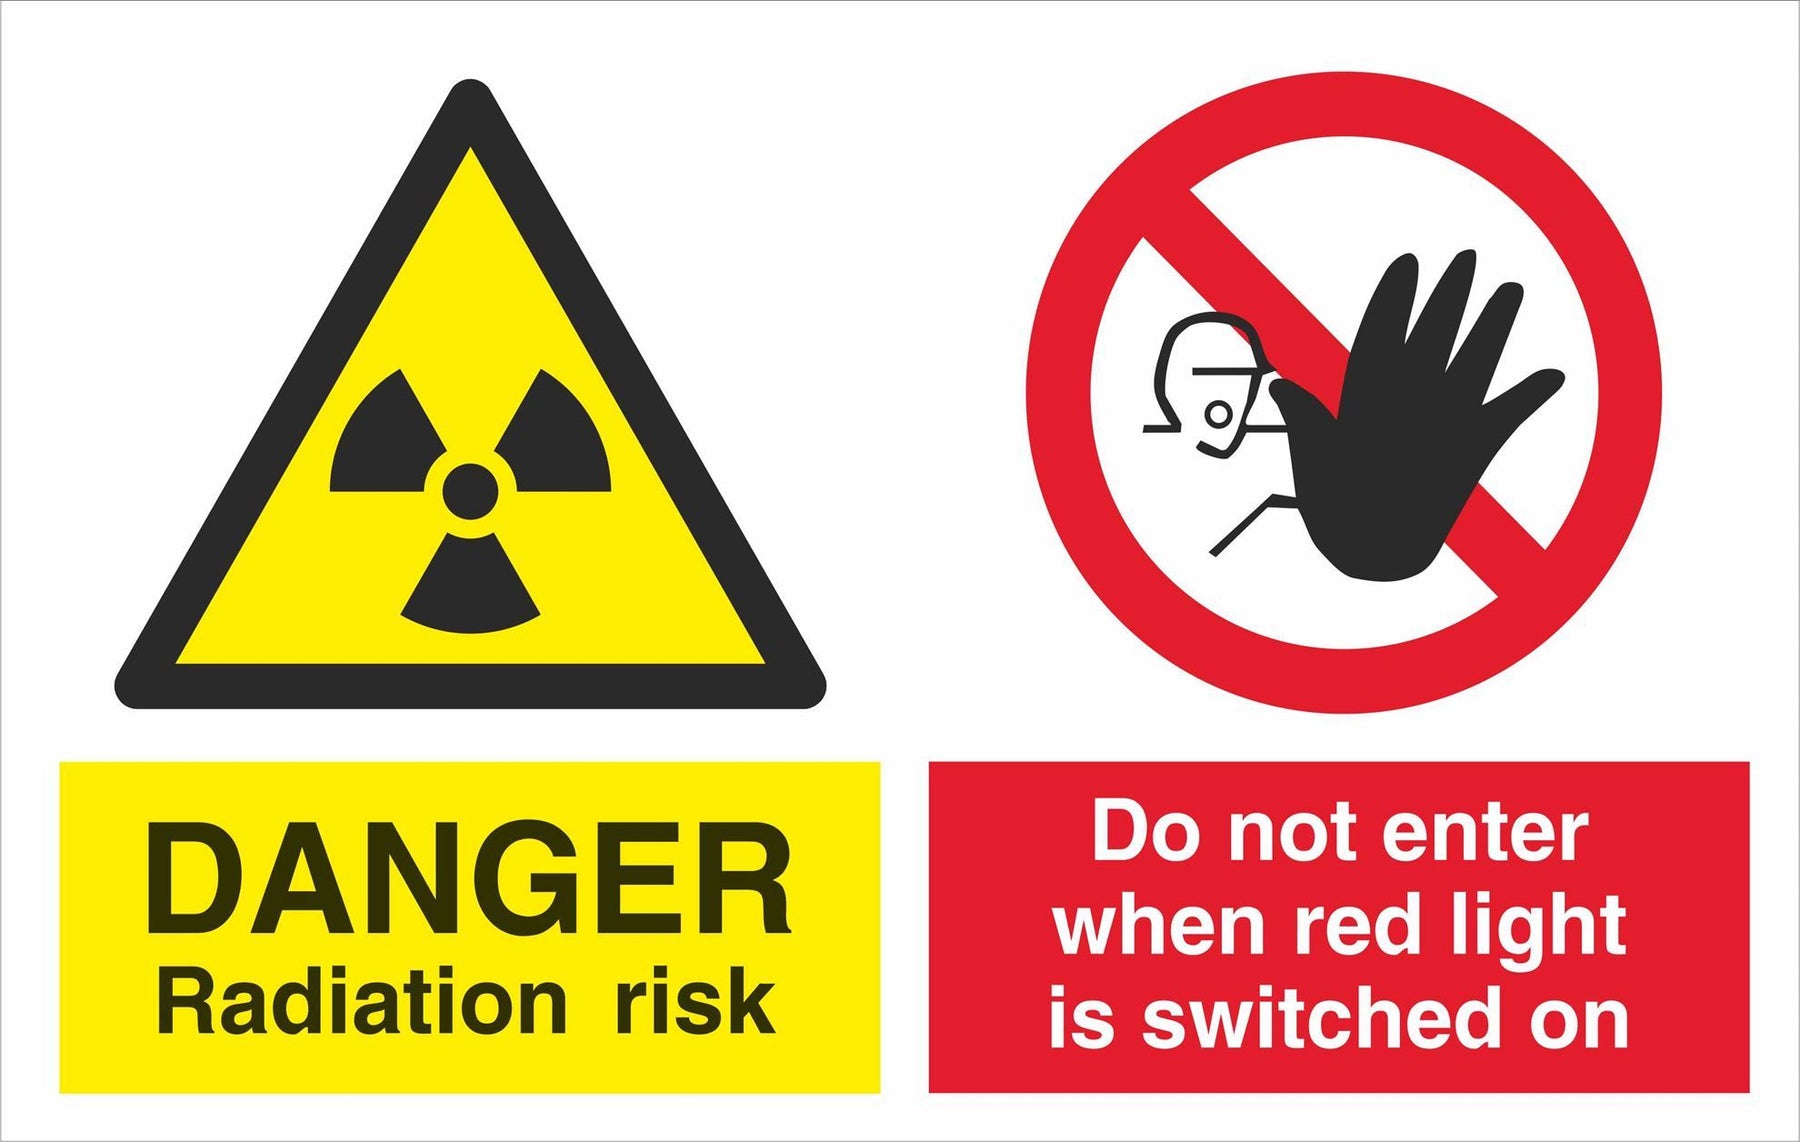 DANGER Radiation risk